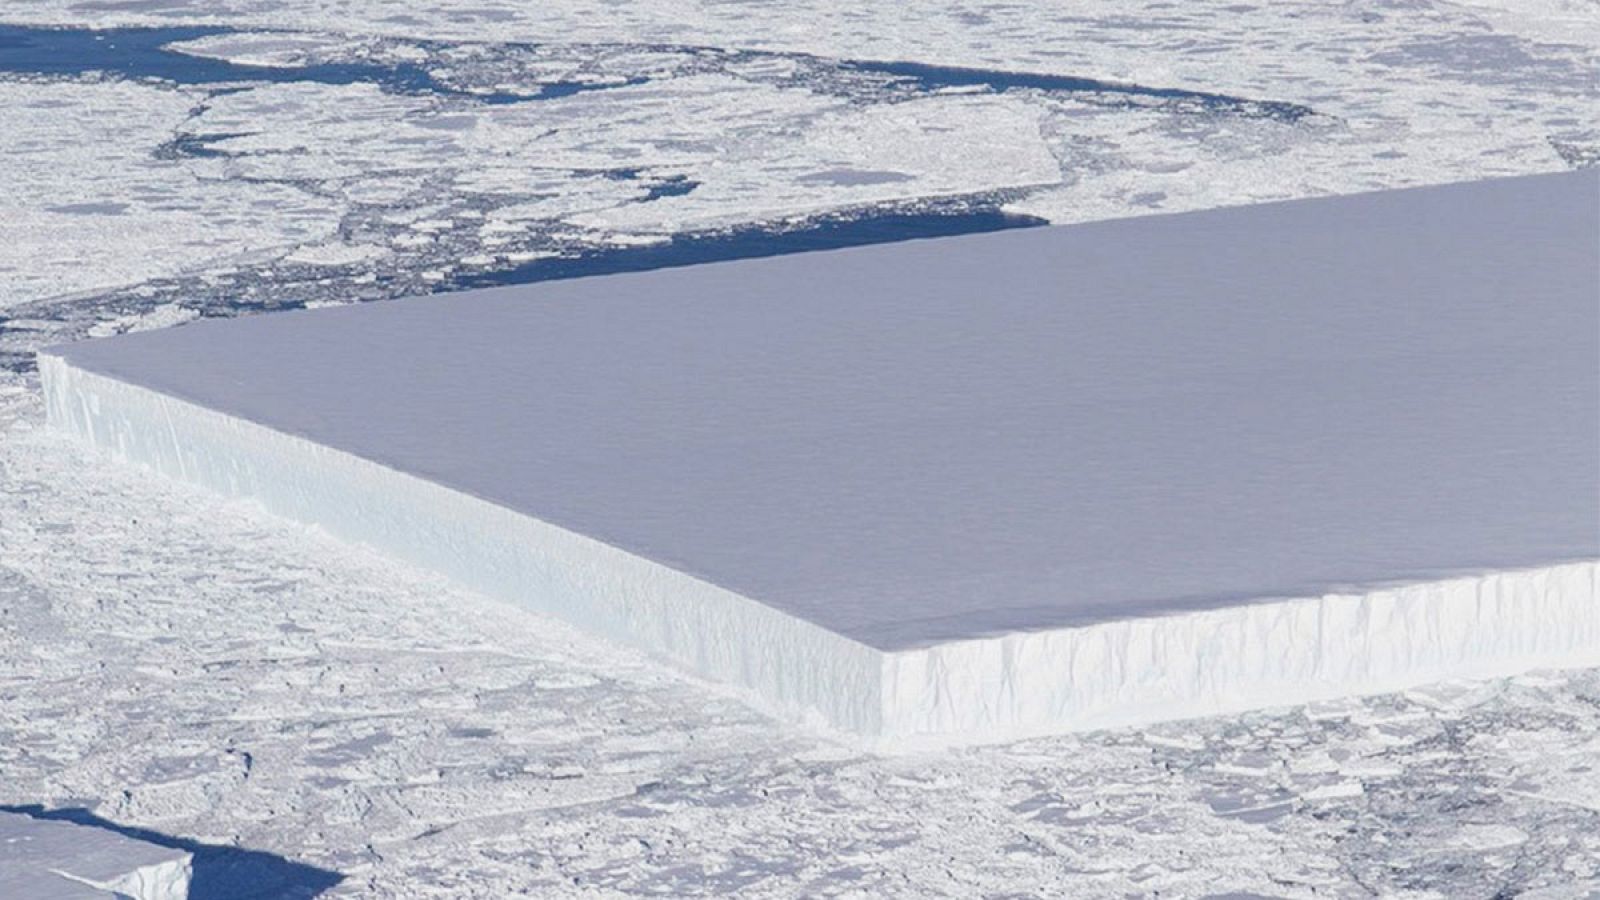 Fotografía de la masa de hielo tomada en la Antártida.